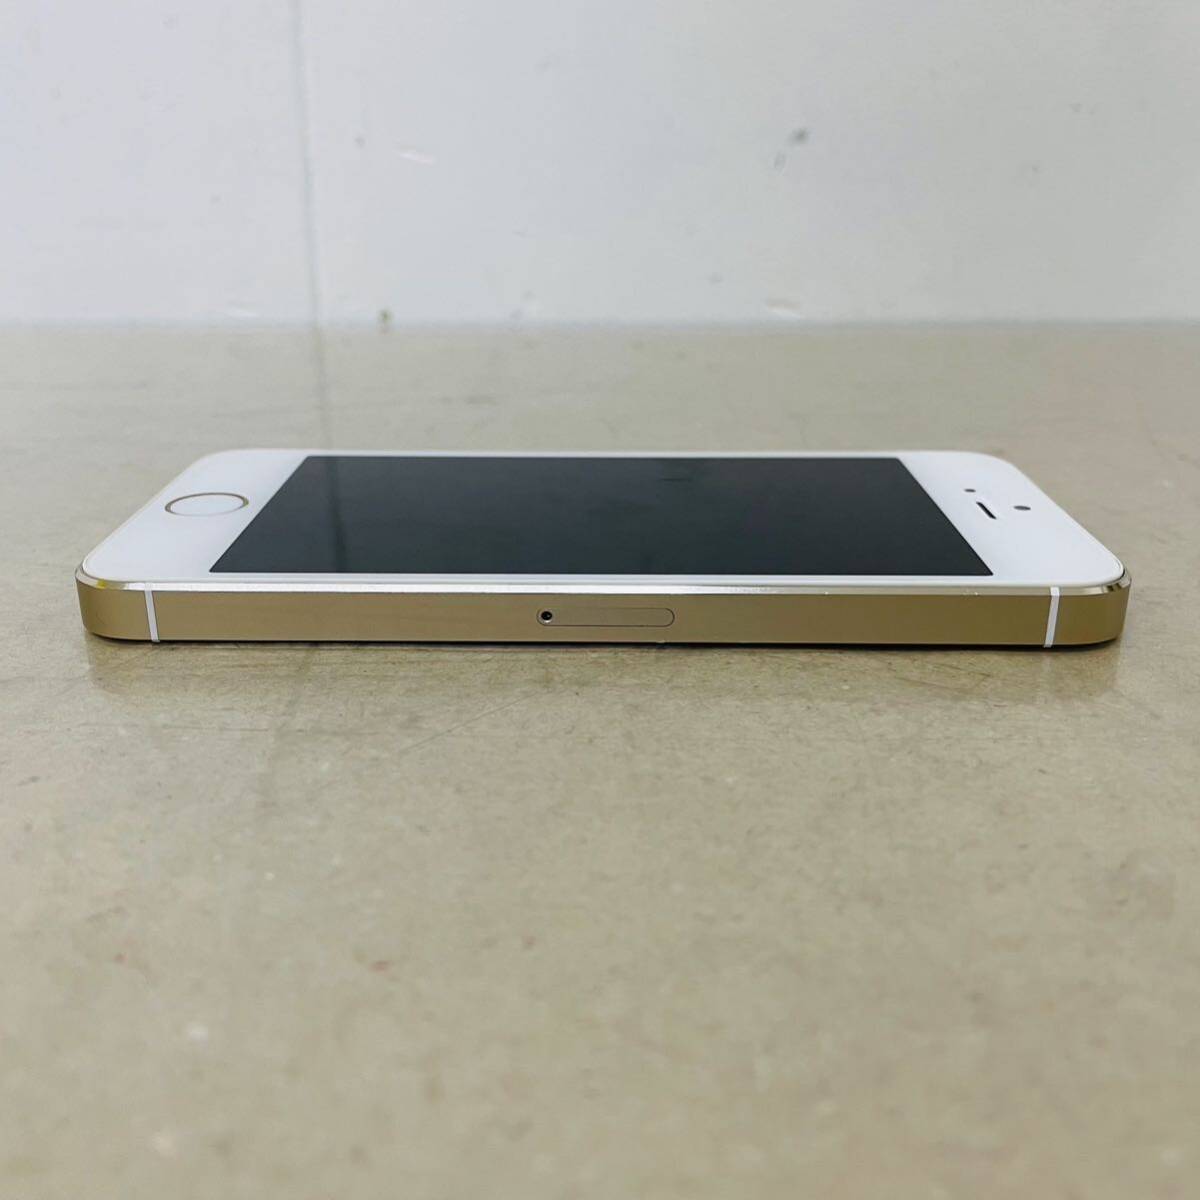  iPhone5s 16GB  ME334J/A  i18029  ネコポス発送の画像8